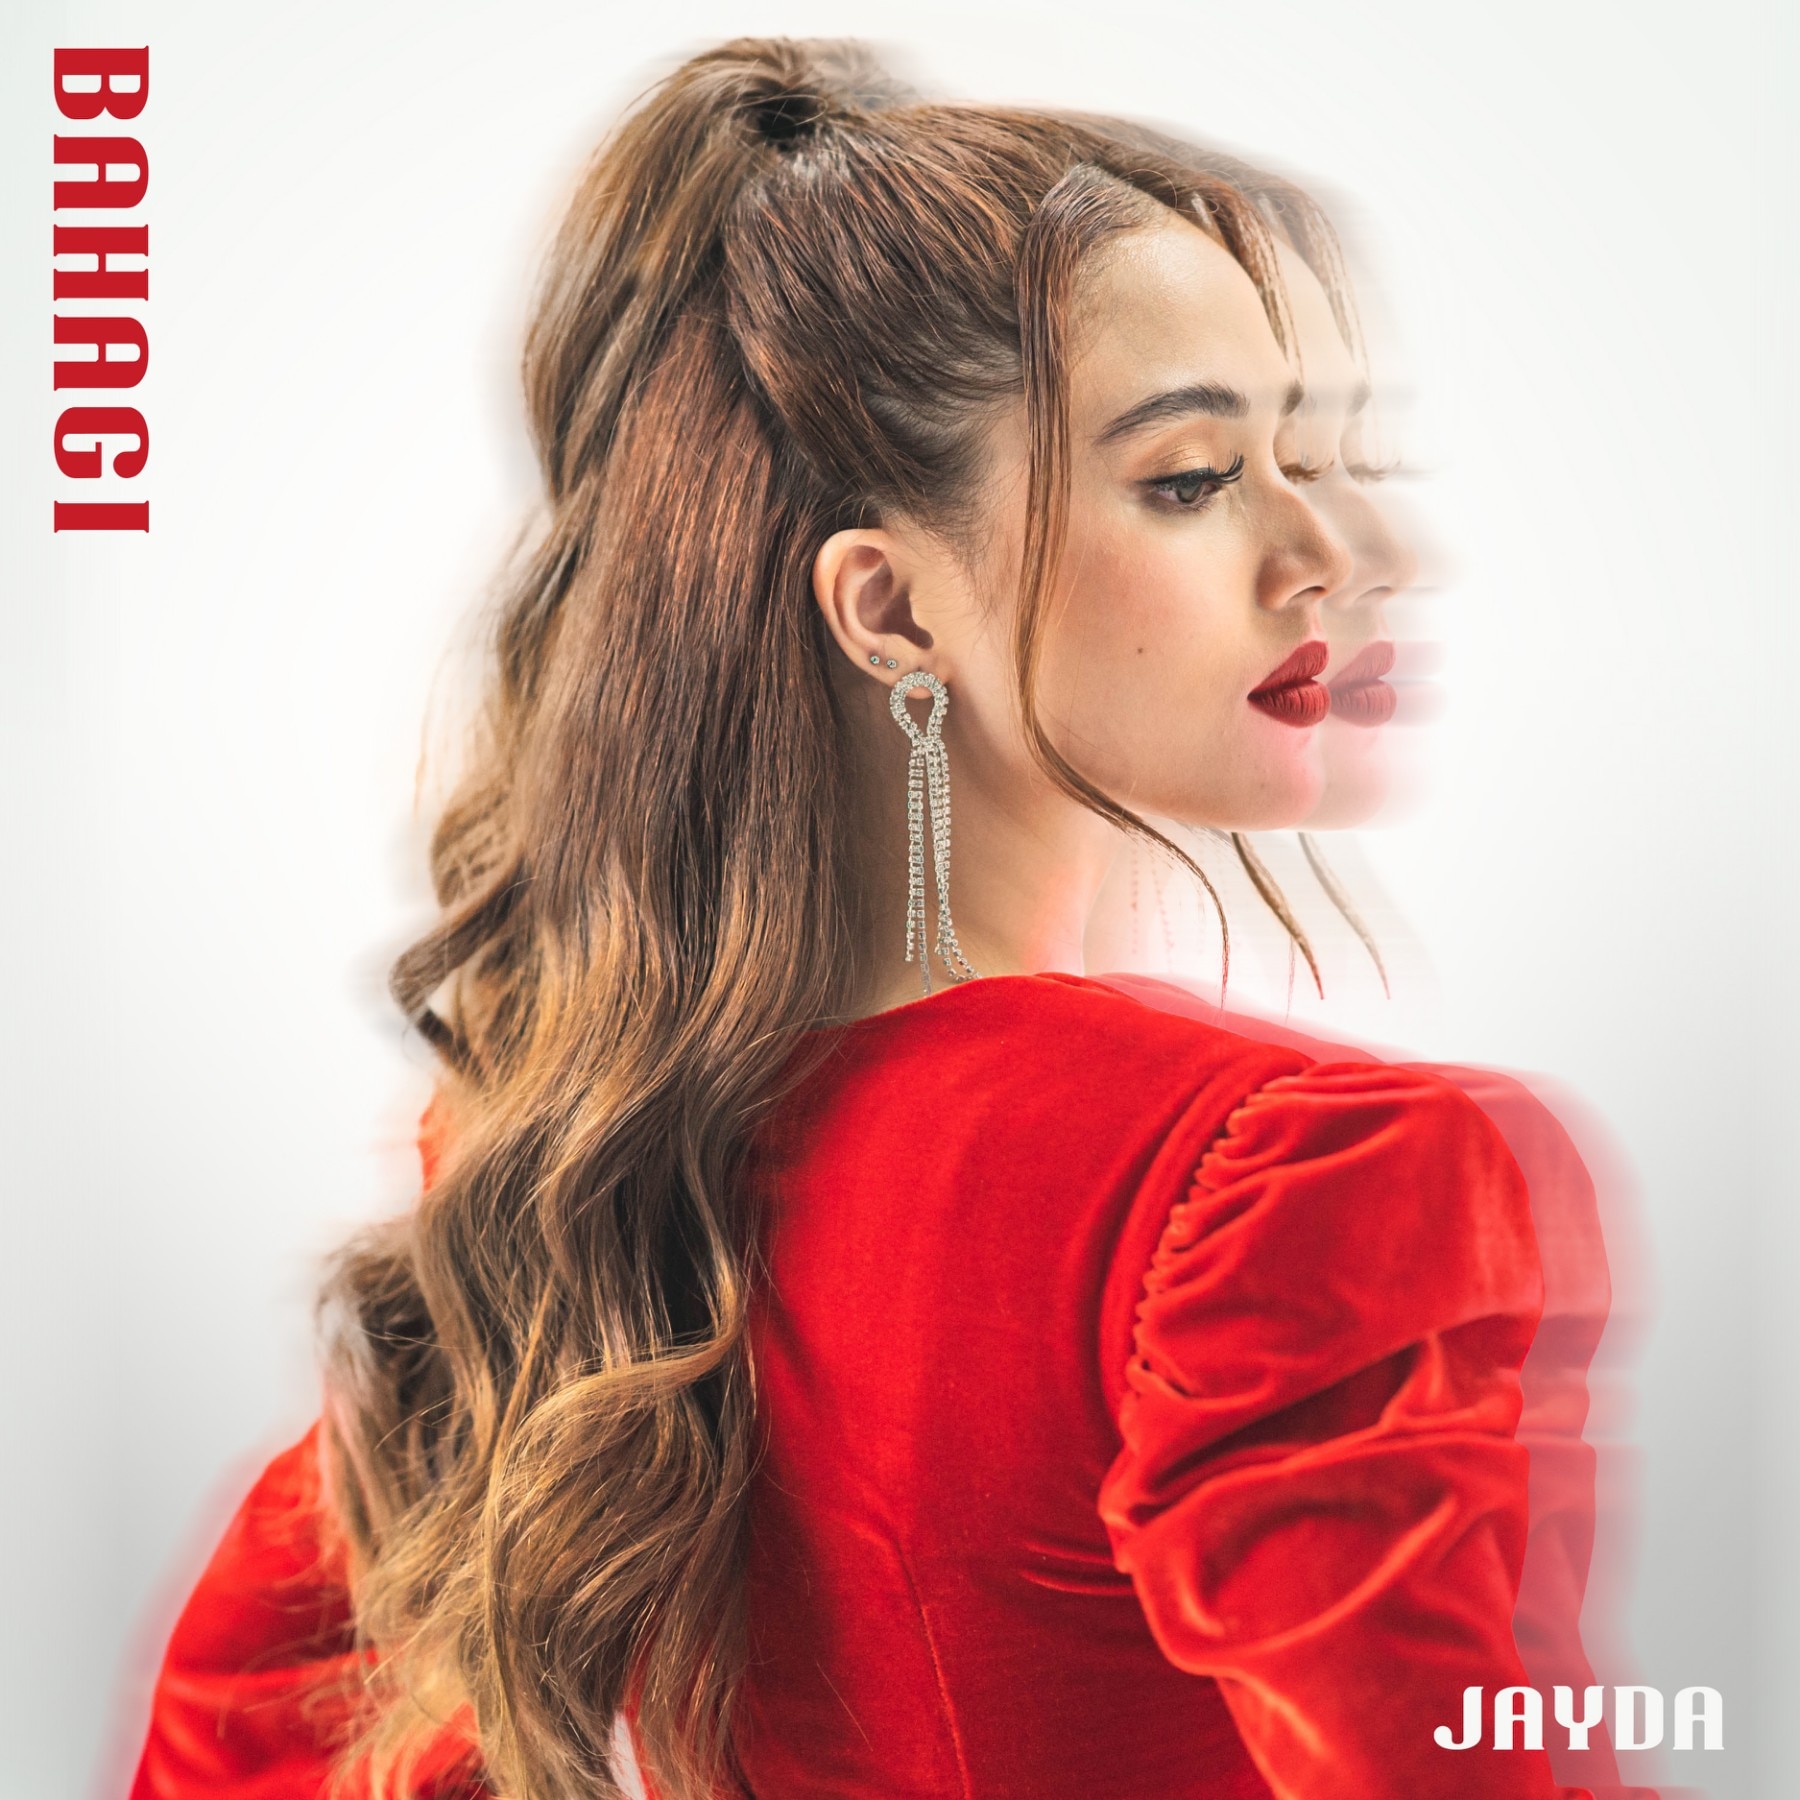 Jayda_Bahagi album cover